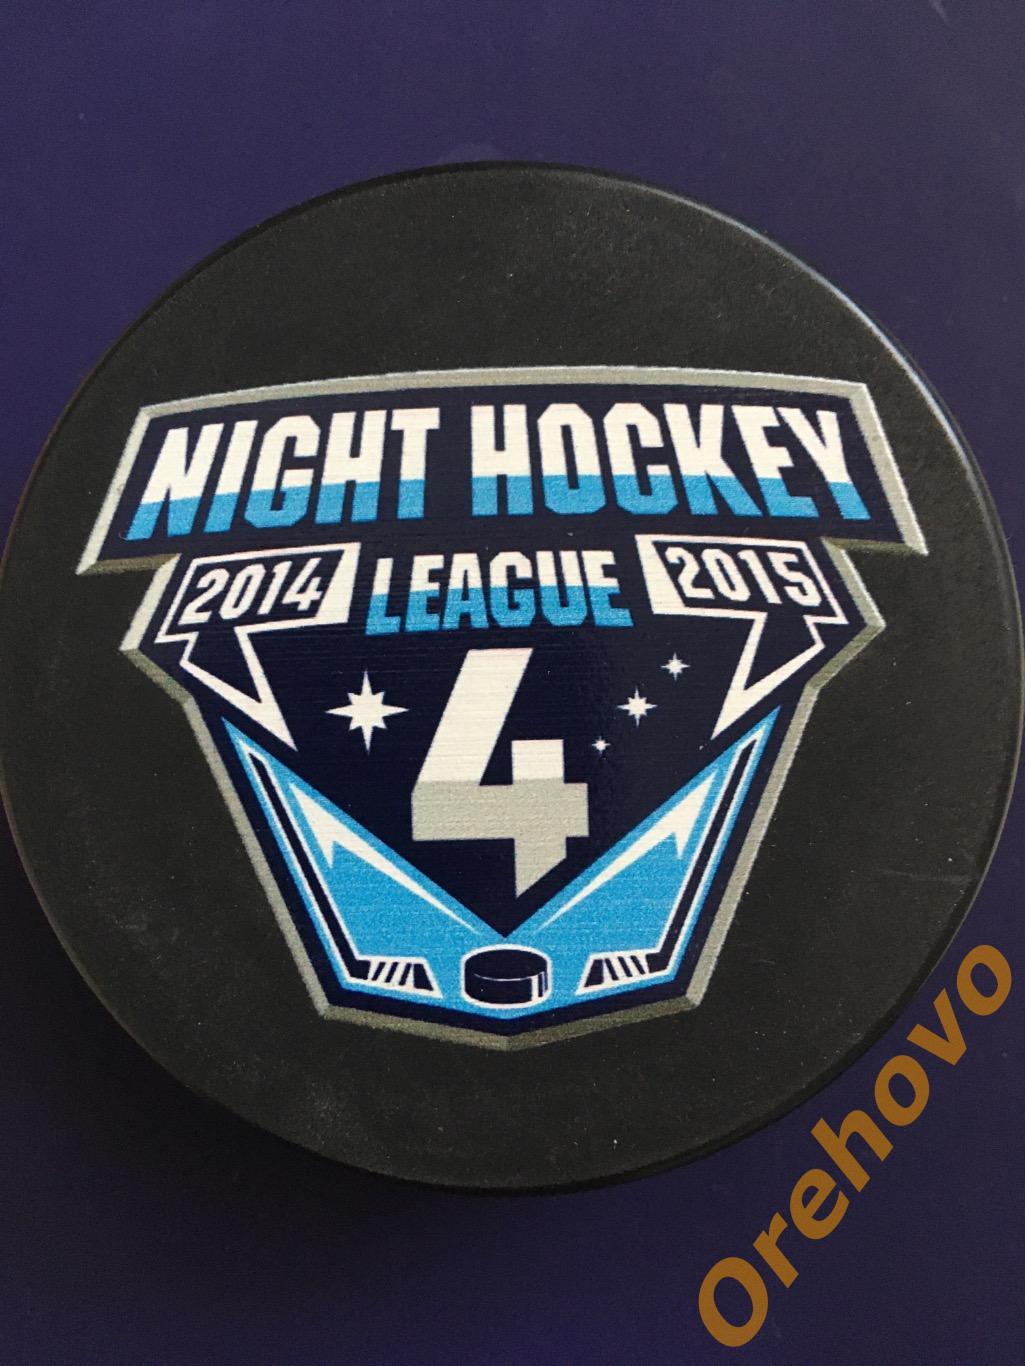 Шайба Ночная хоккейная Лига сезон 2014/2015 (сувенир) 1